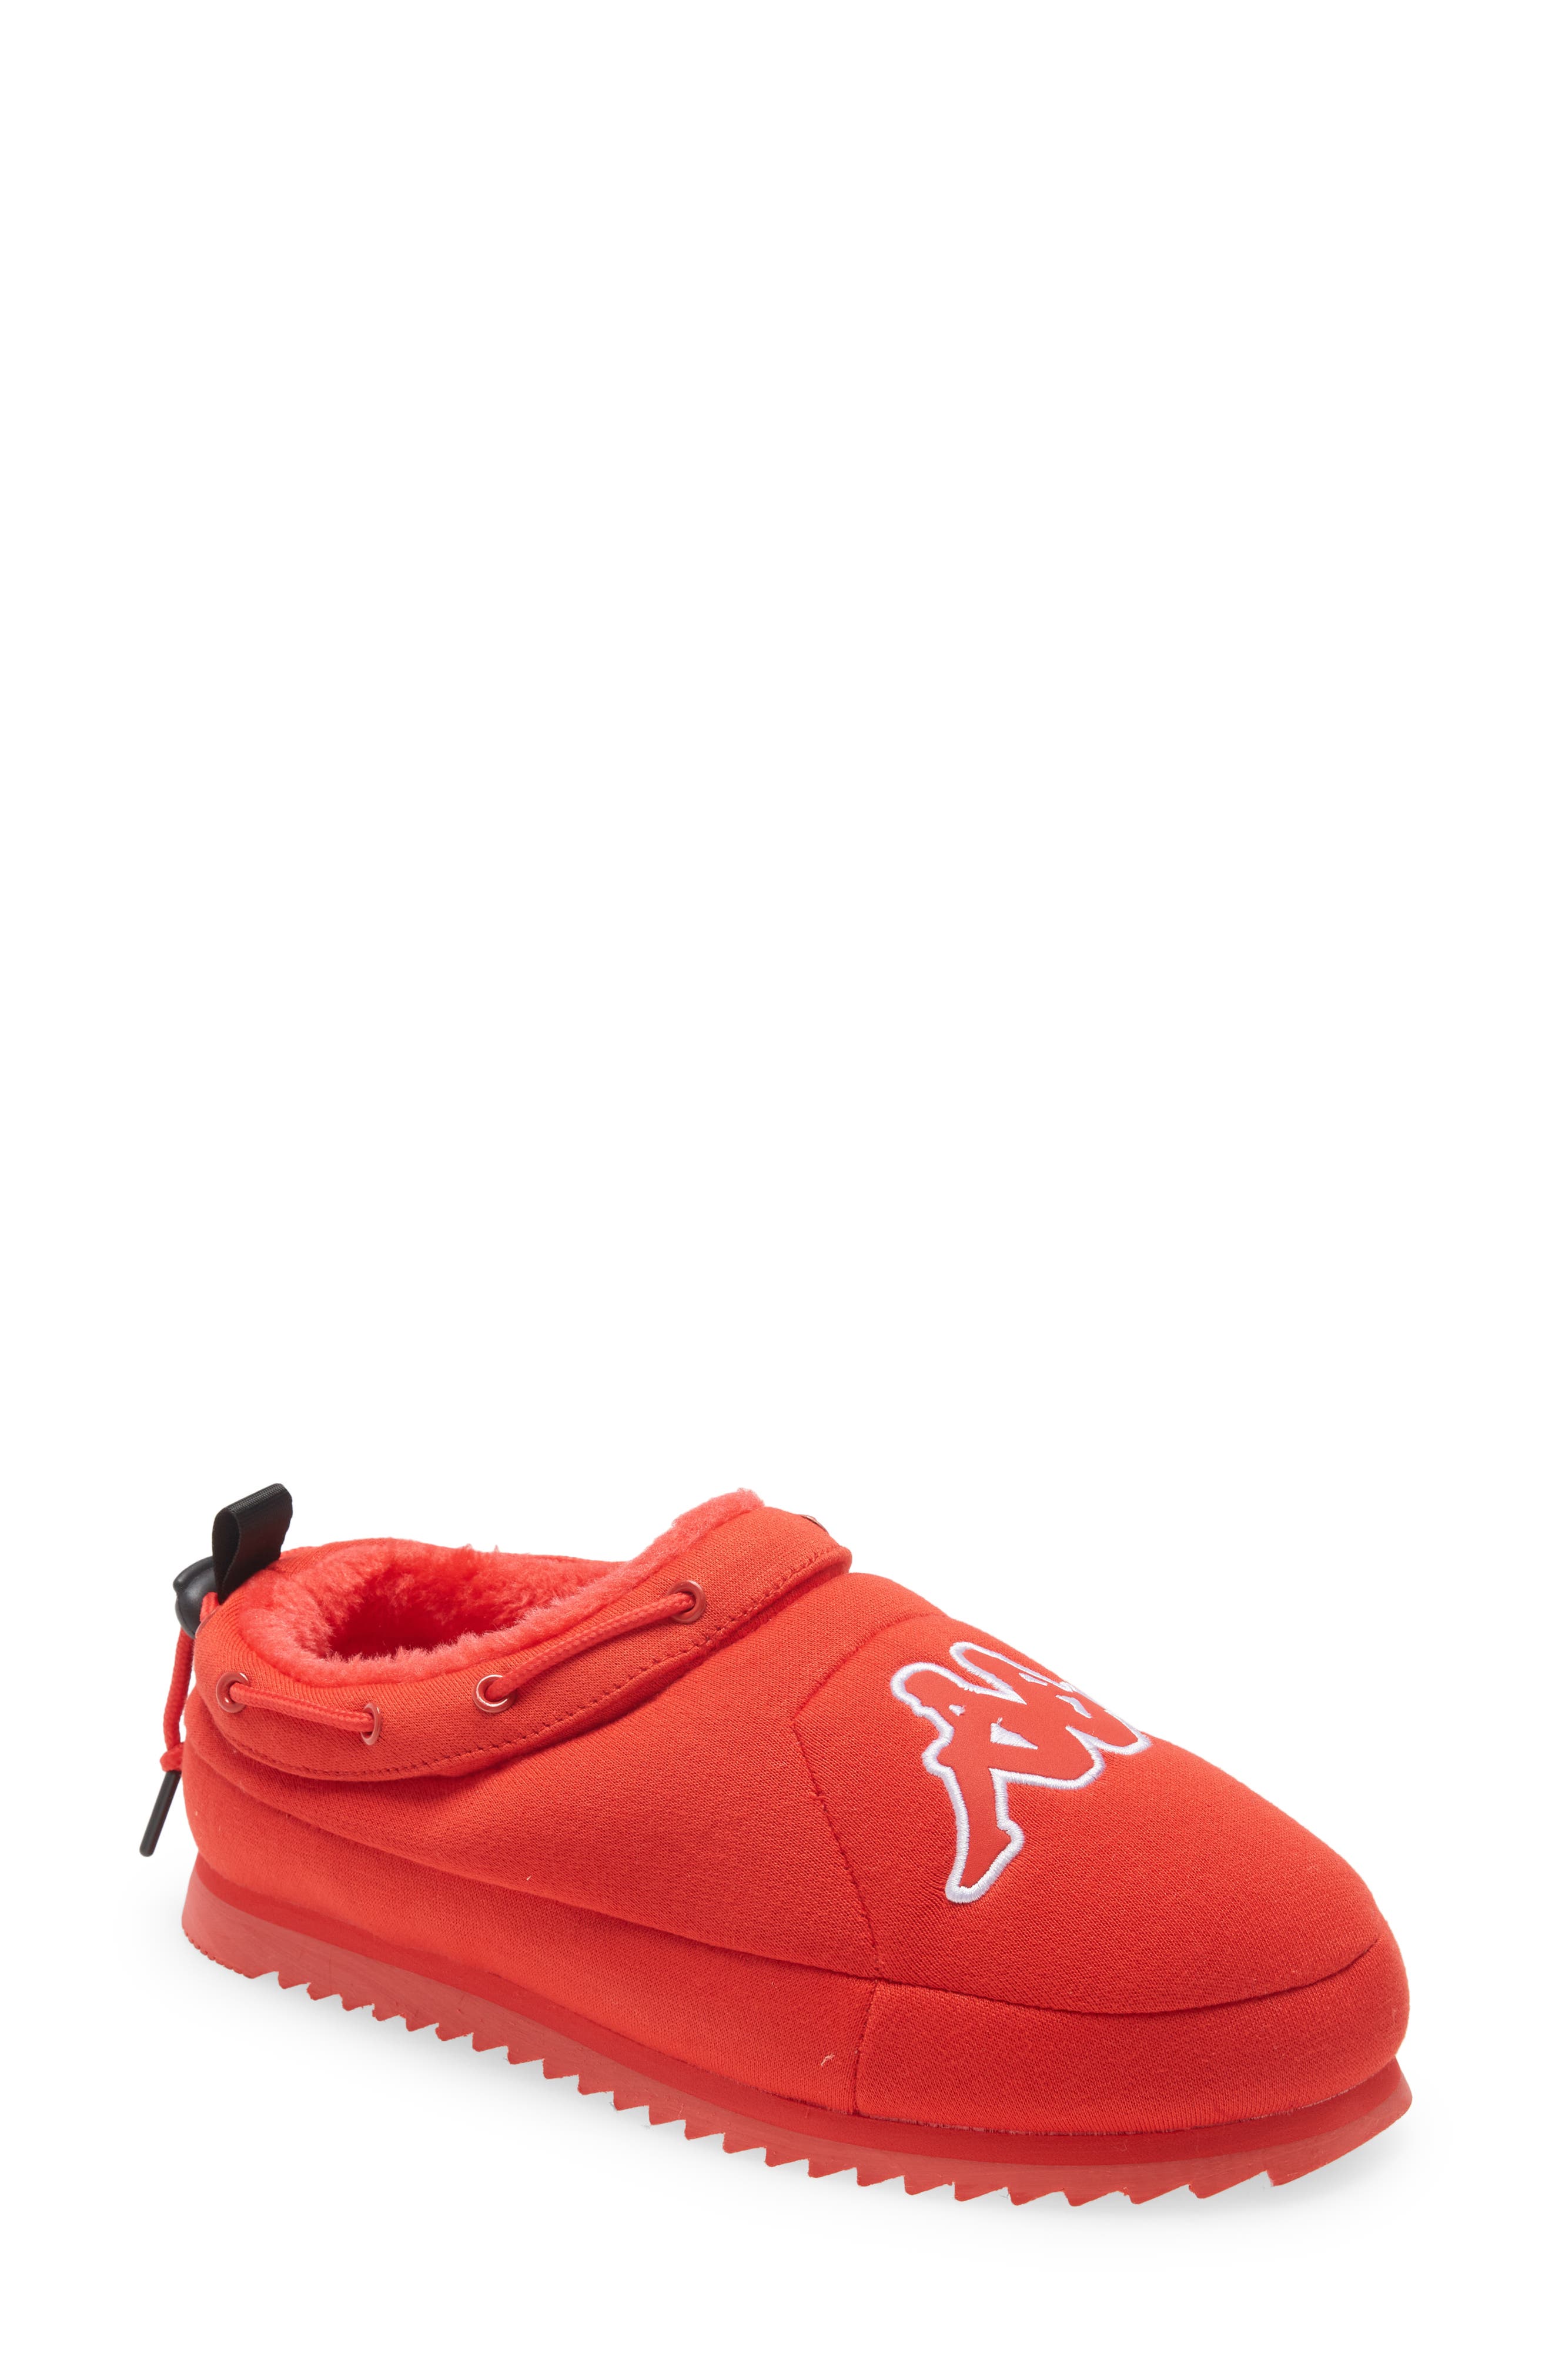 Kappa Tasin Logo Sneaker Mule in Red/White at Nordstrom, Size 13